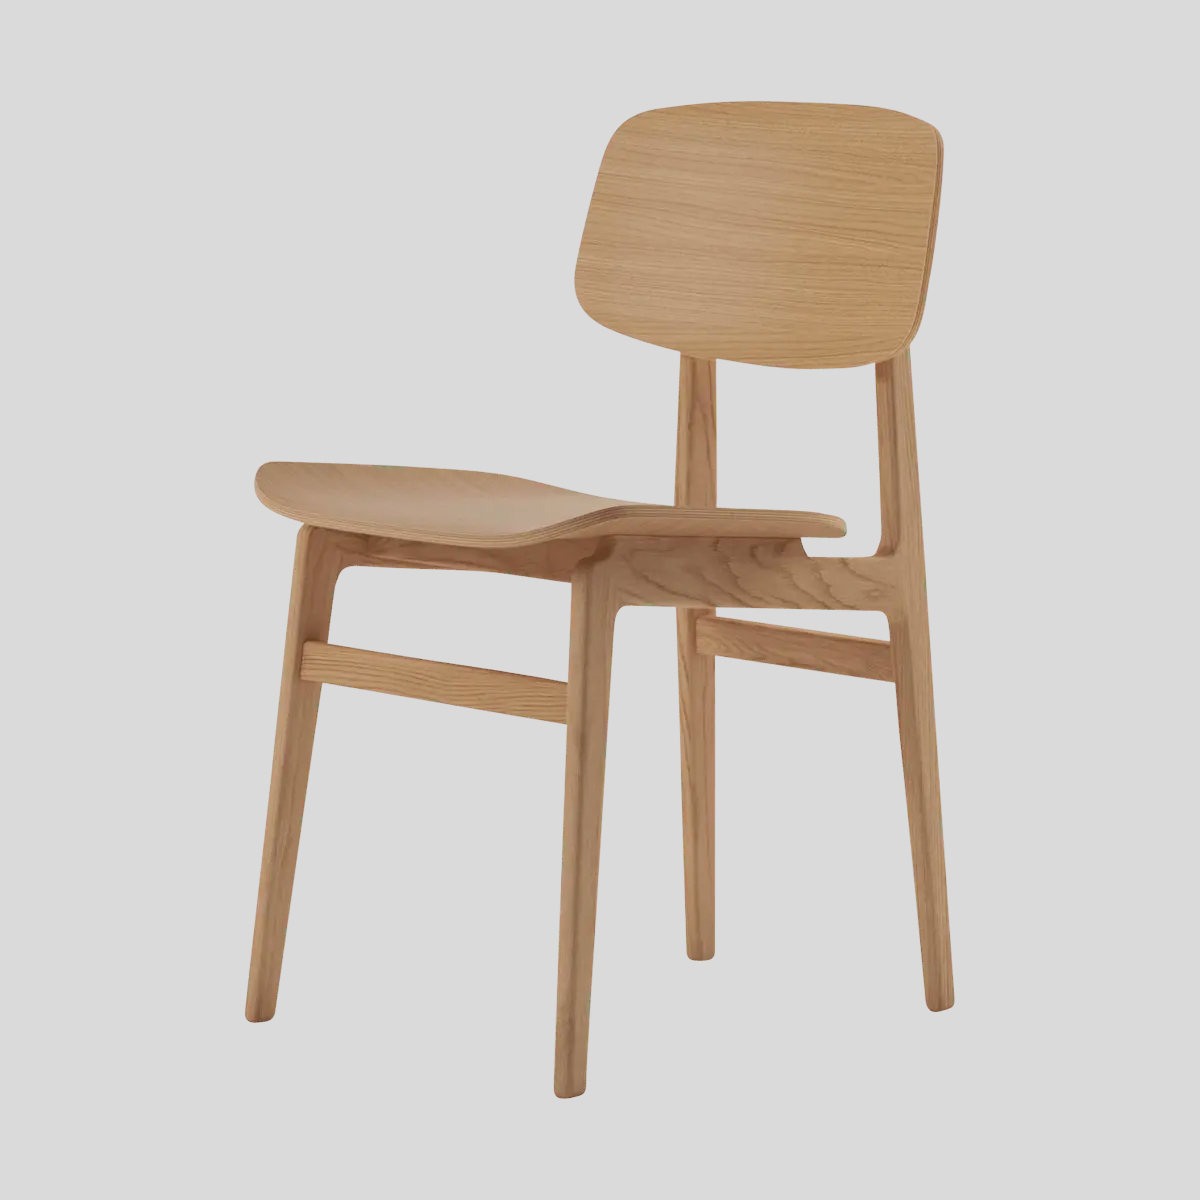 Scandinavische meubels hebben vaak een tijdloos karakter. Deze eetkamerstoel heeft dat ook. Hierdoor doe je jaren met deze stoel.